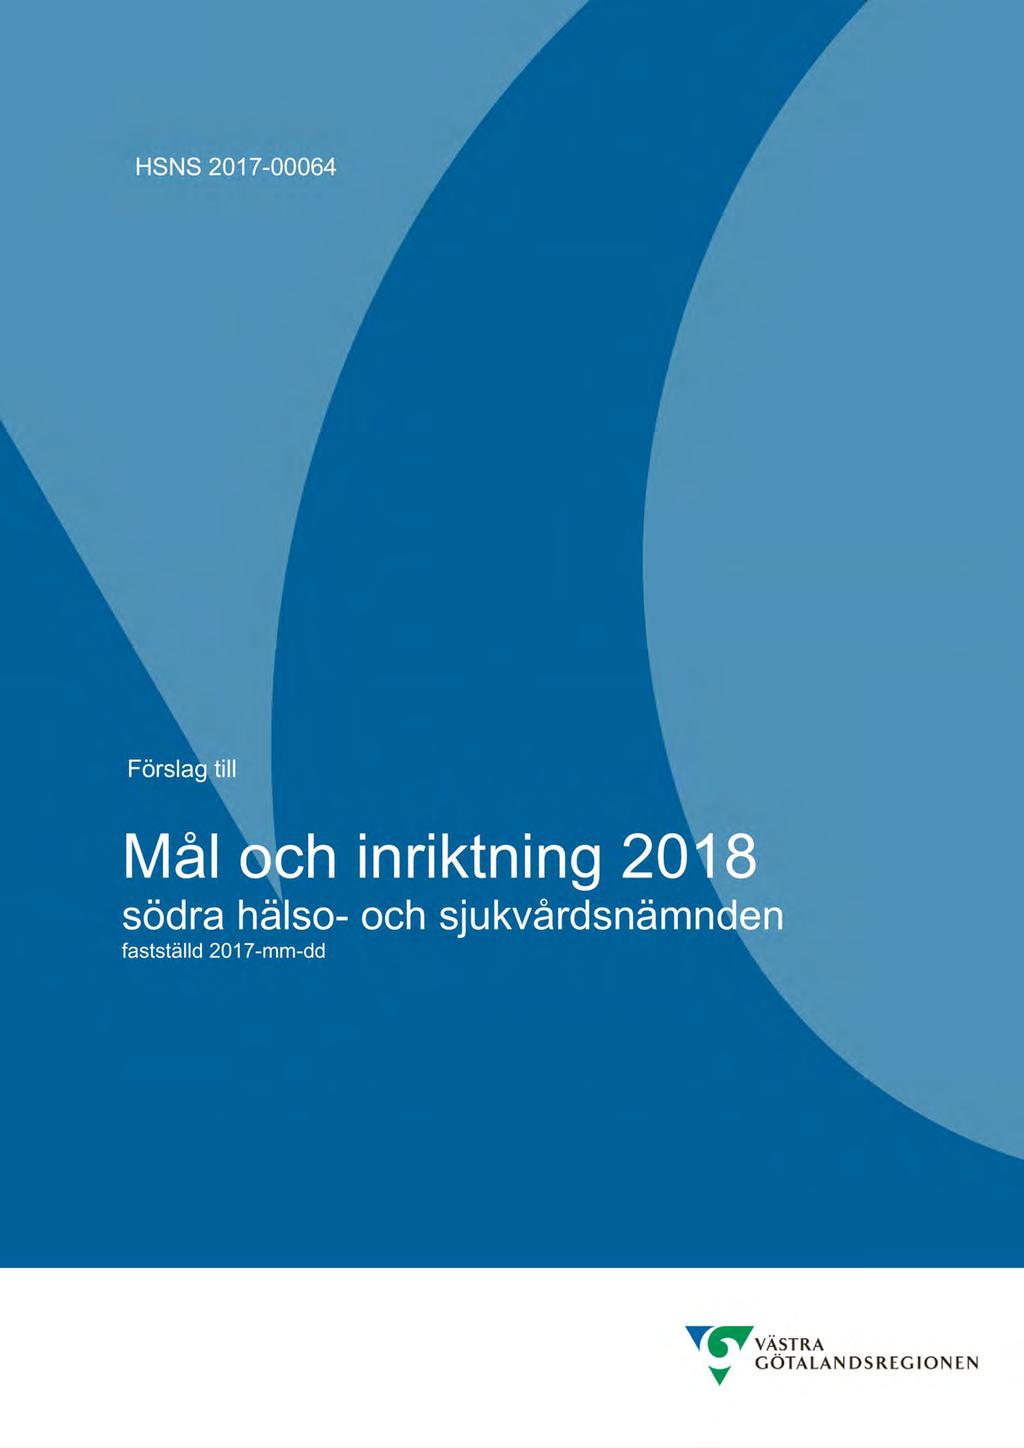 86 Mål och inriktning 2018 - HSNS 2017-00064-1 Mål och inriktning 2018 för södra hälso- och sjukvårdsnämnden : Mål och inriktning